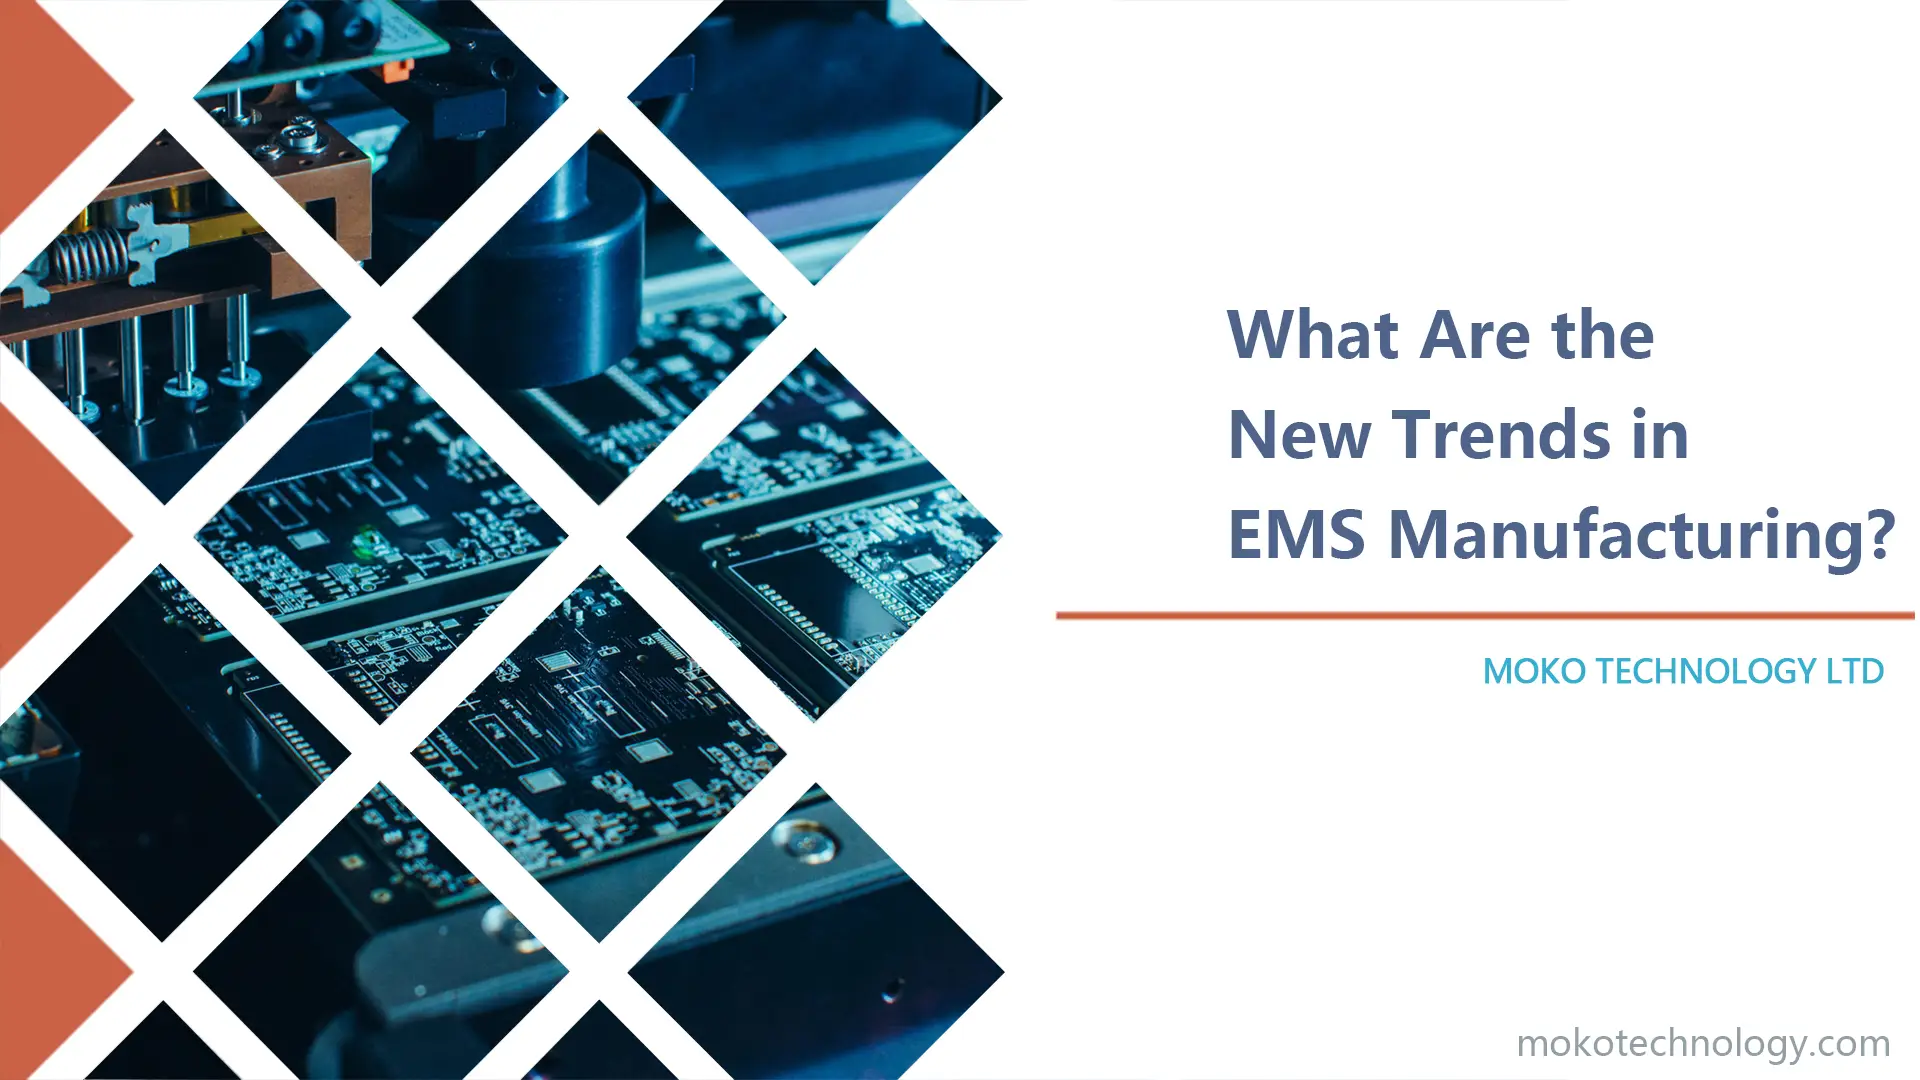 Chì sò e novi tendenze in a fabricazione EMS